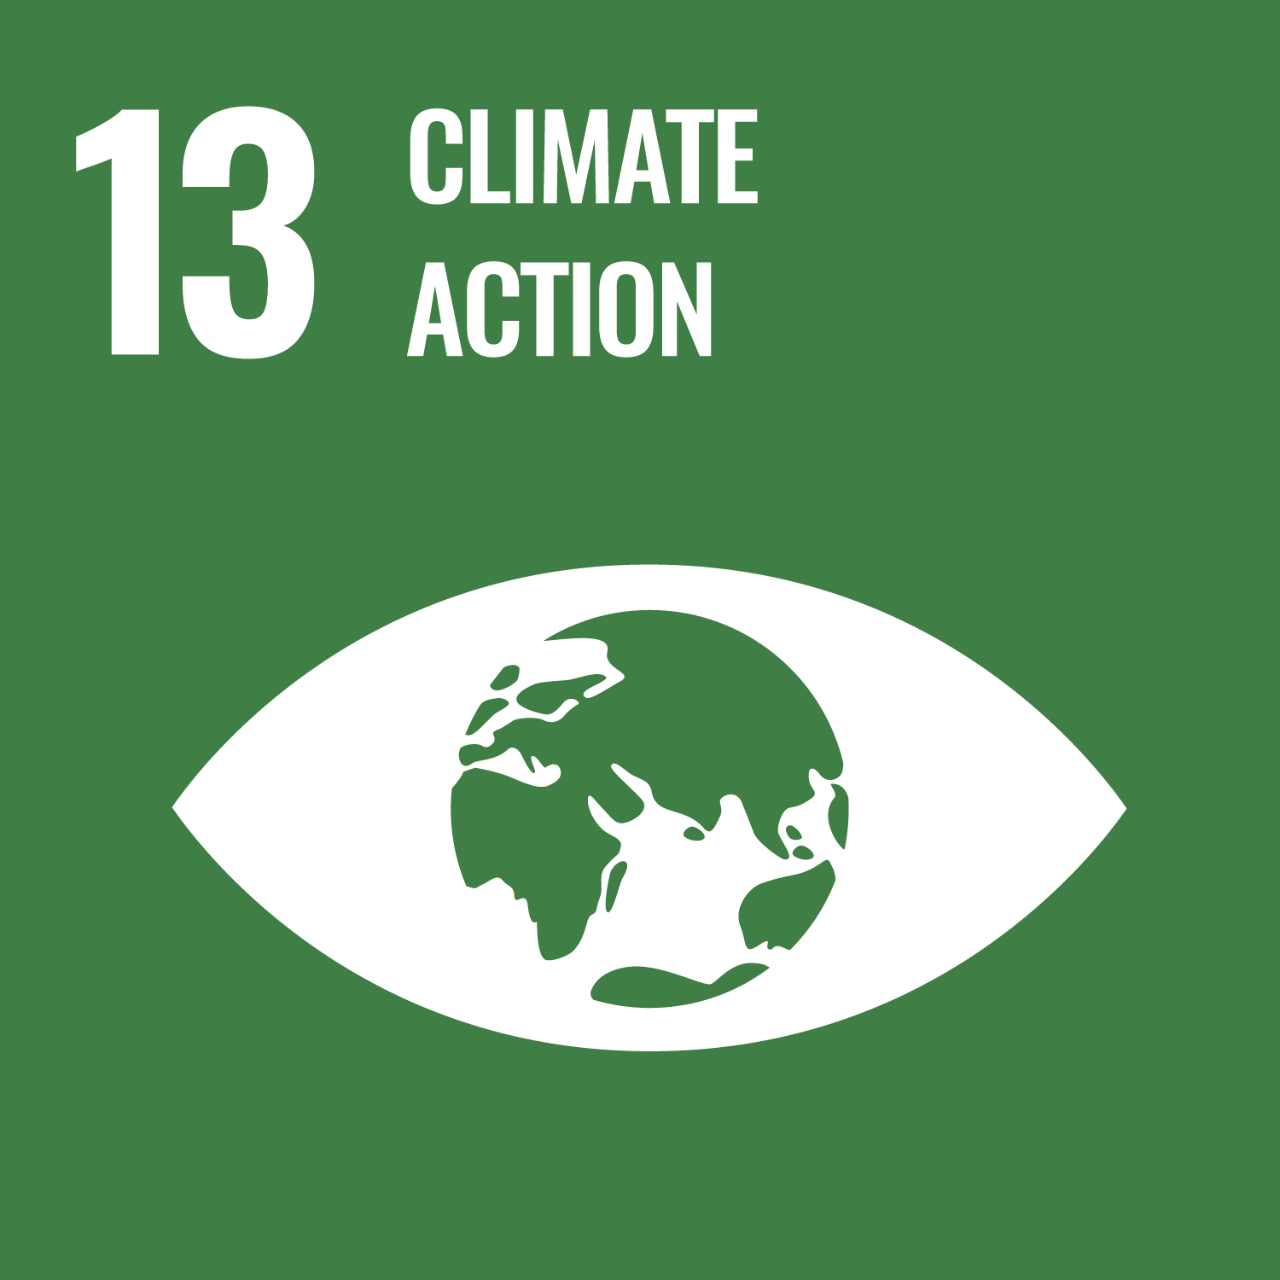 持続可能な開発目標13は、気候変動とその影響に対する緊急の行動を取ることを目的としている